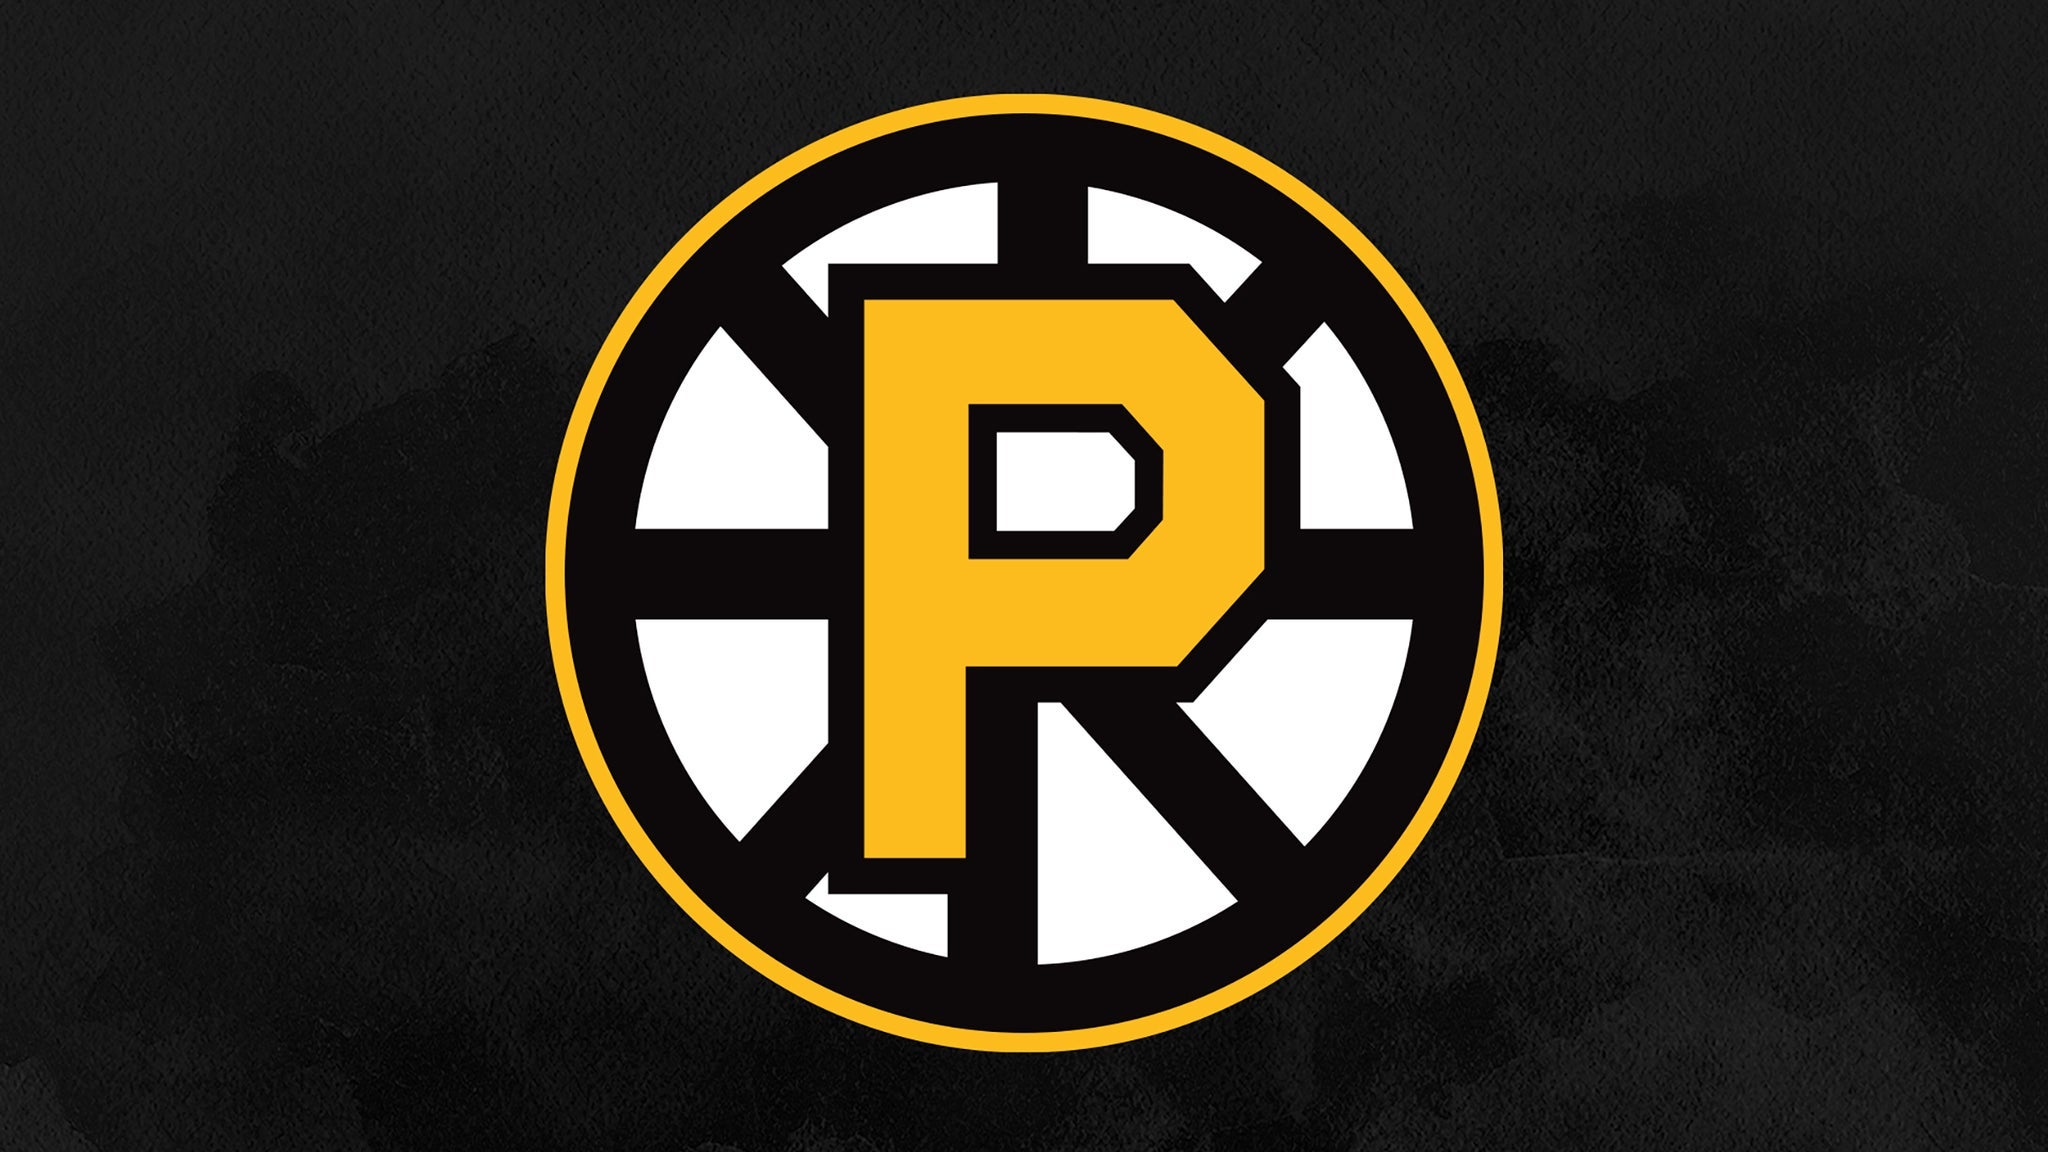 Providence Bruins vs. Hartford Wolf Pack - Providence, RI 02903